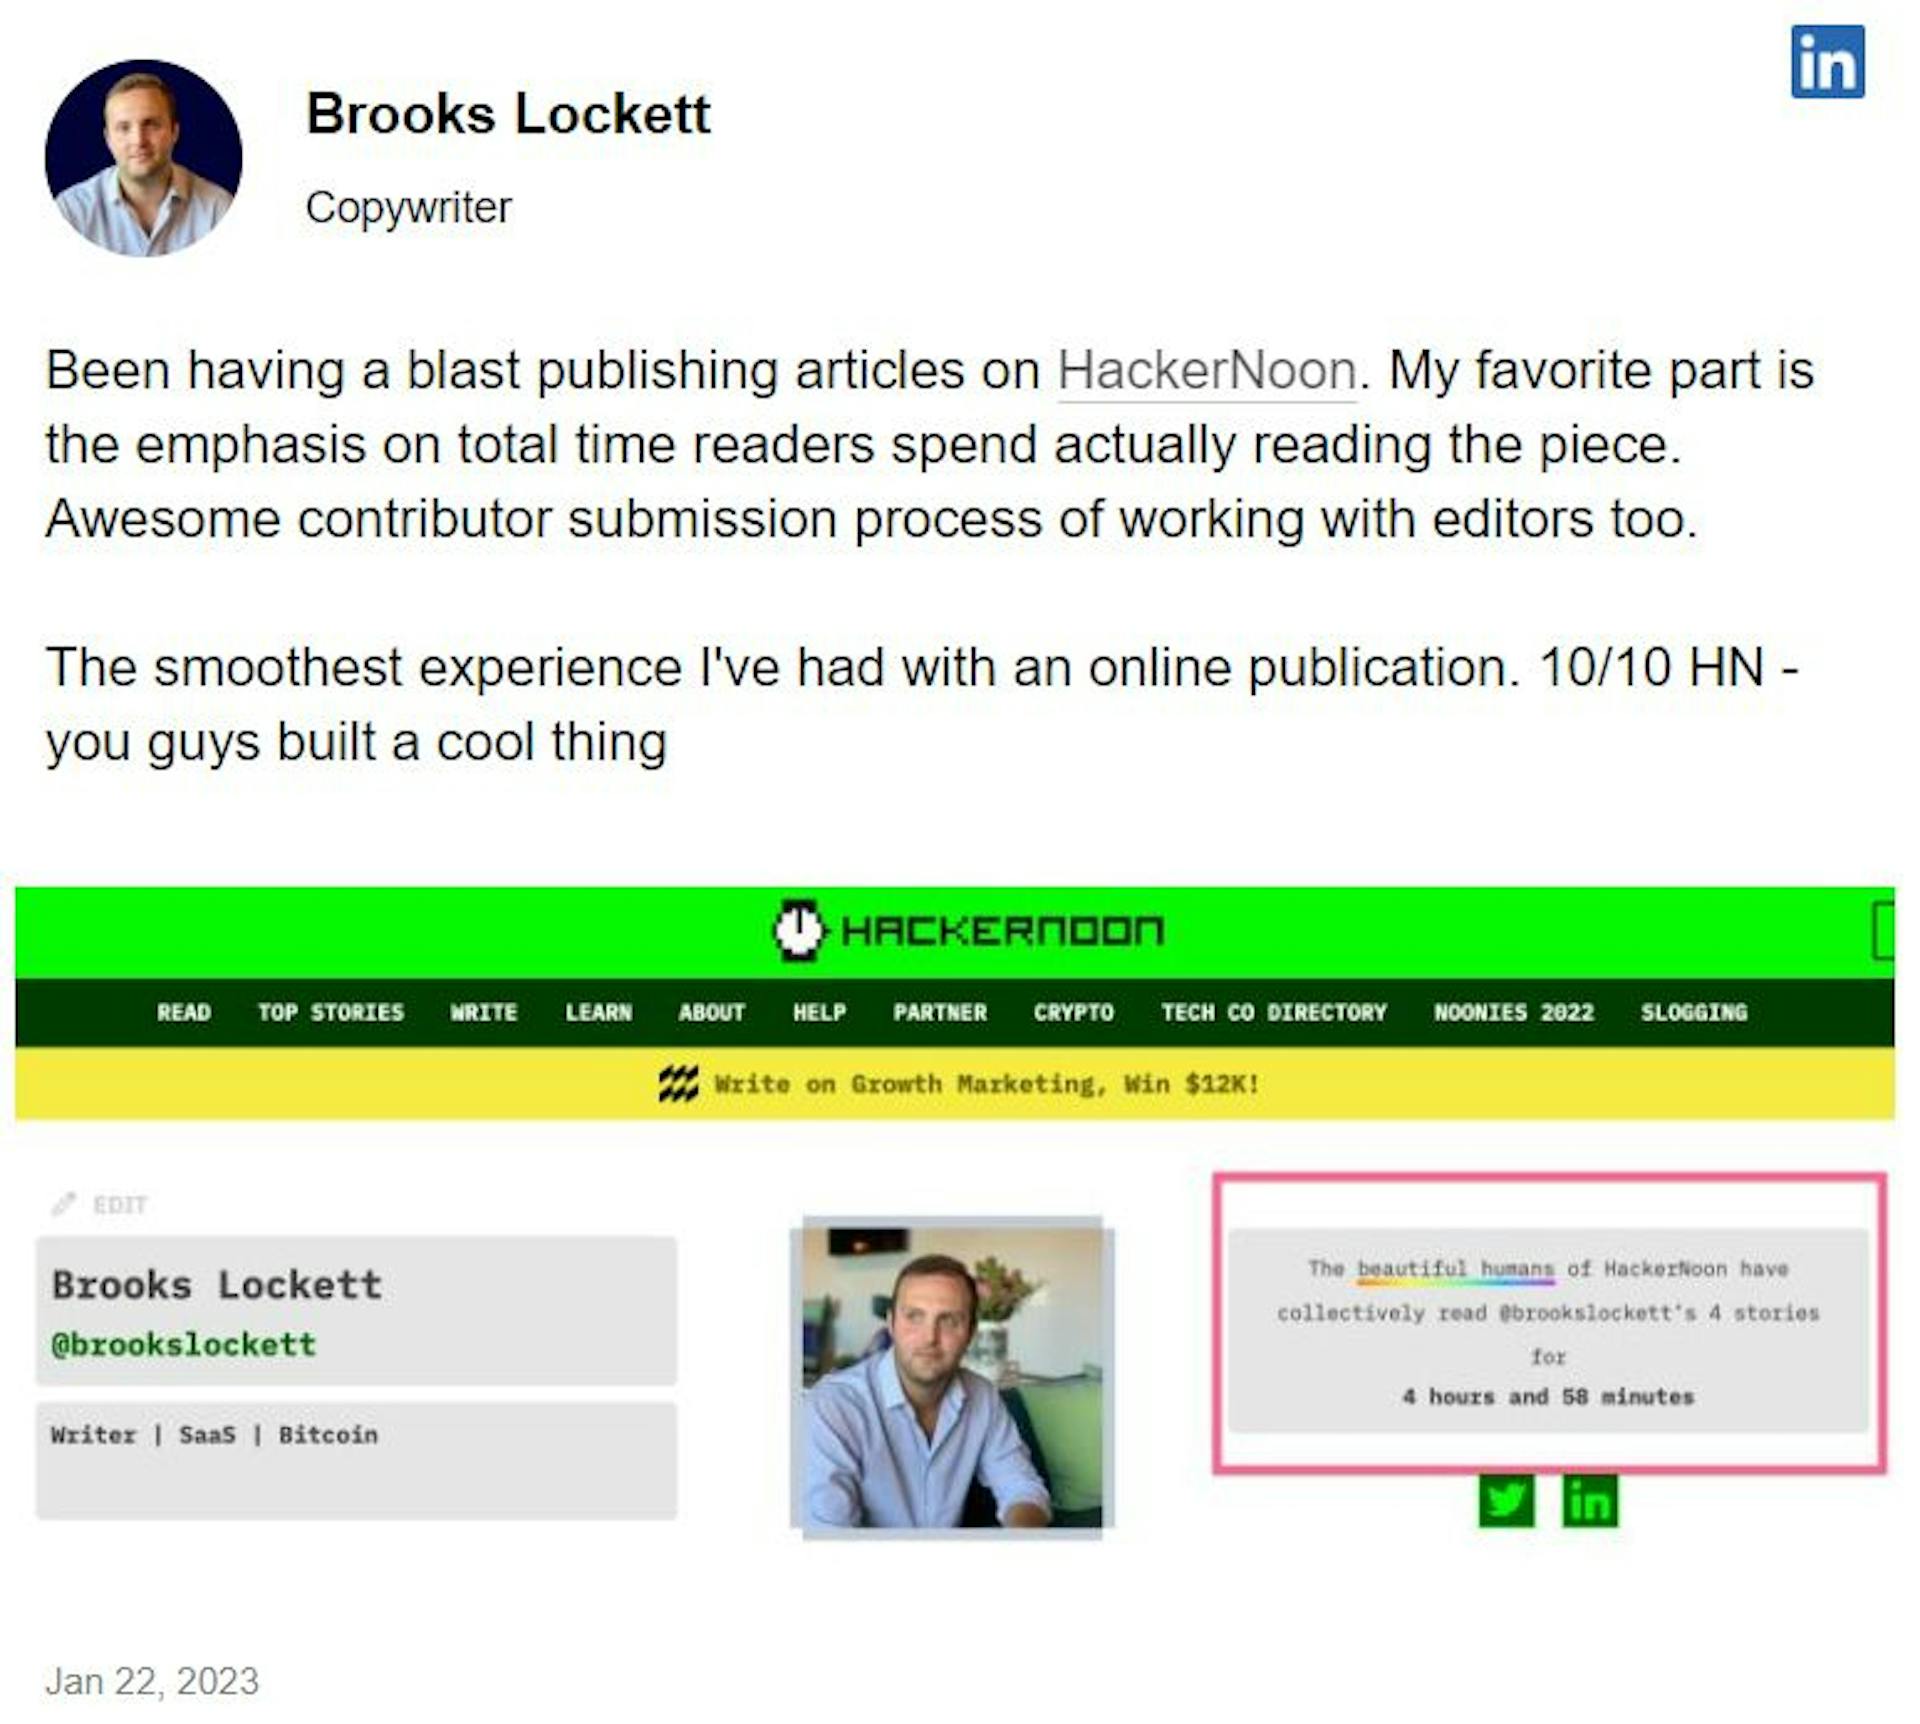 Lời khai của Brooks Lockett trên HackerNoon, tháng 1 năm 2023.